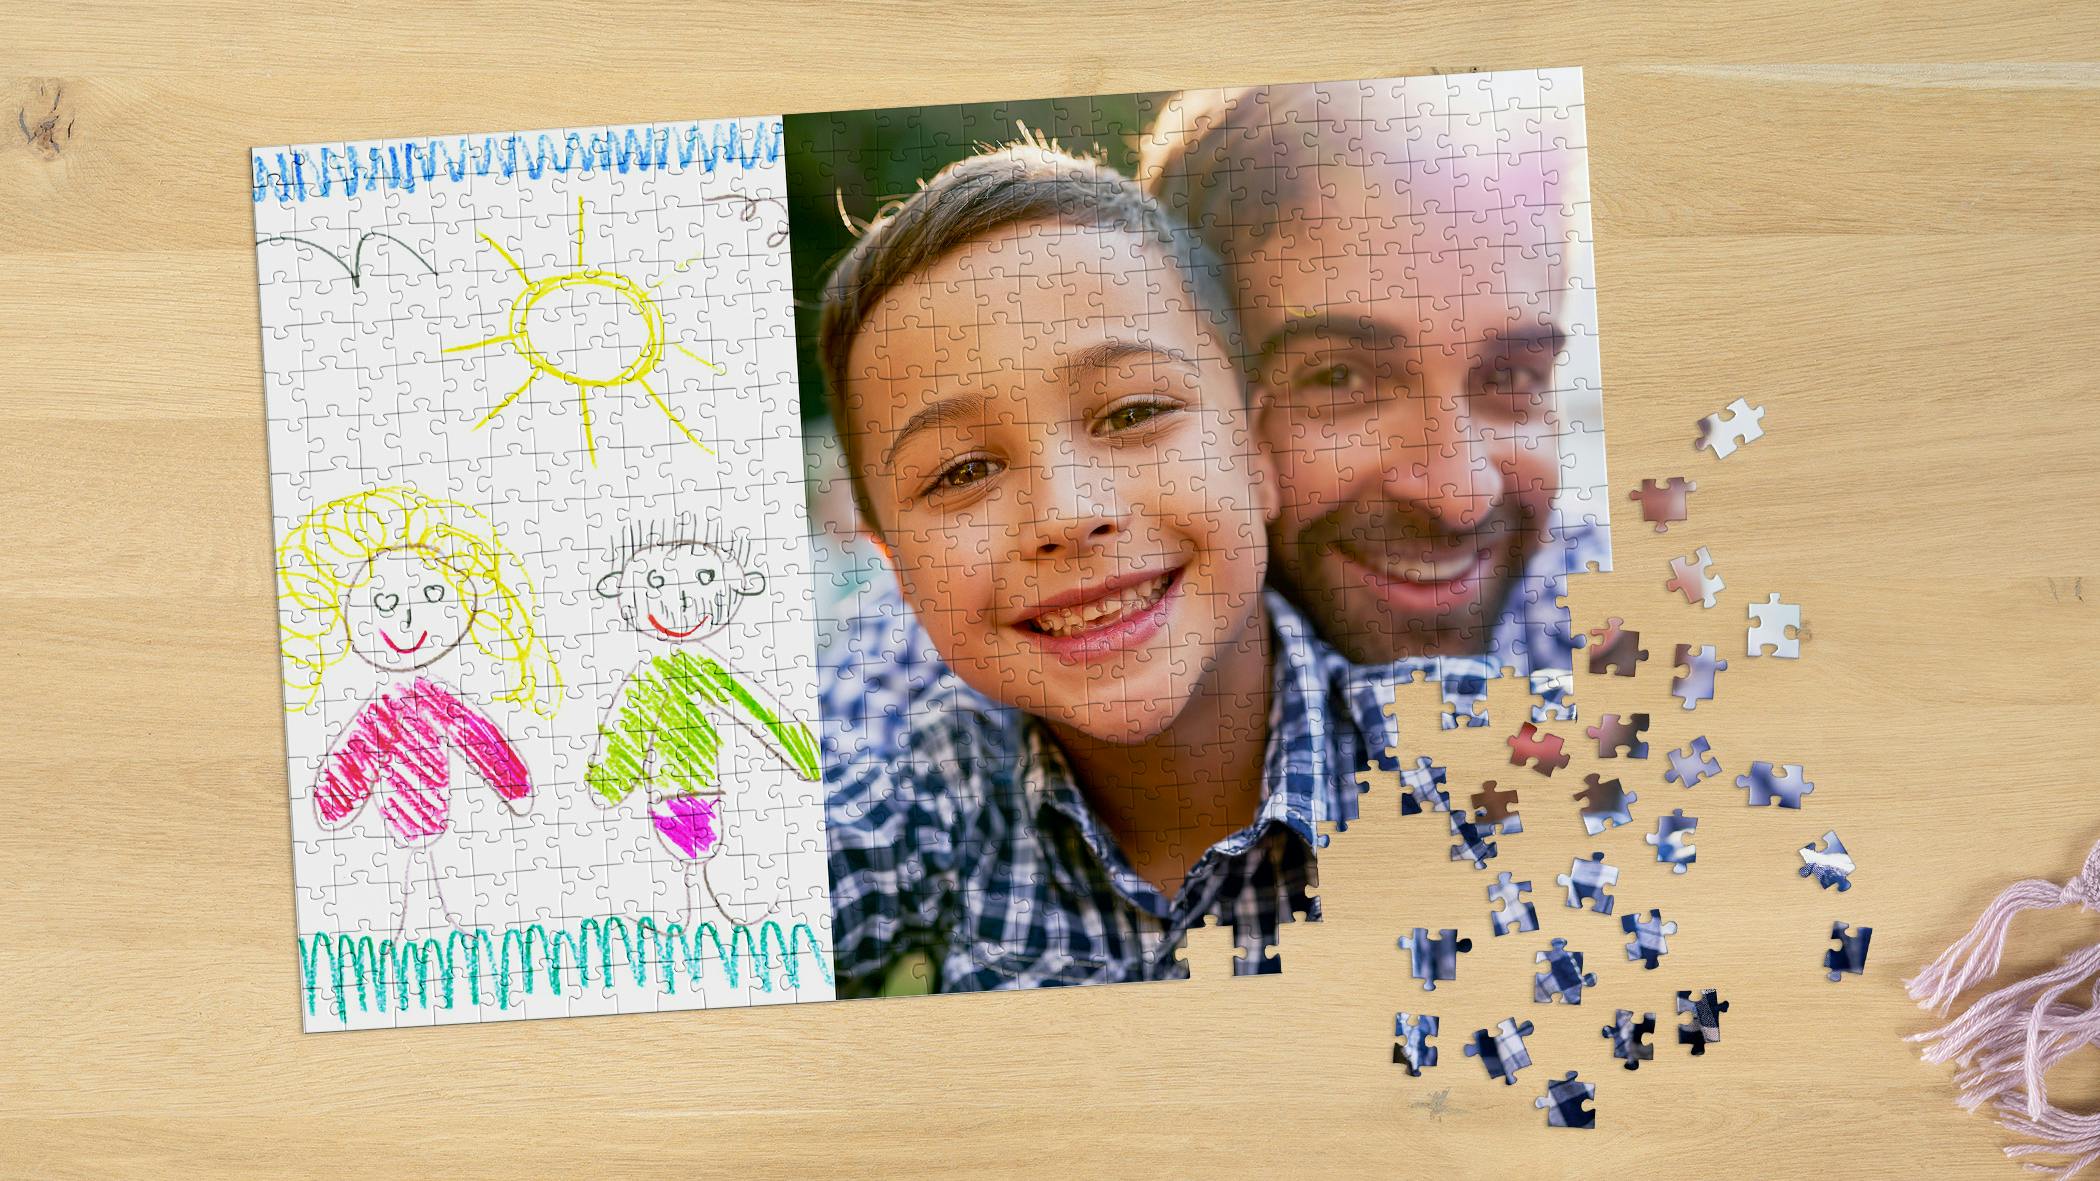 Fotopuslespil med en fotocollage af et familiefoto og et barns tegning